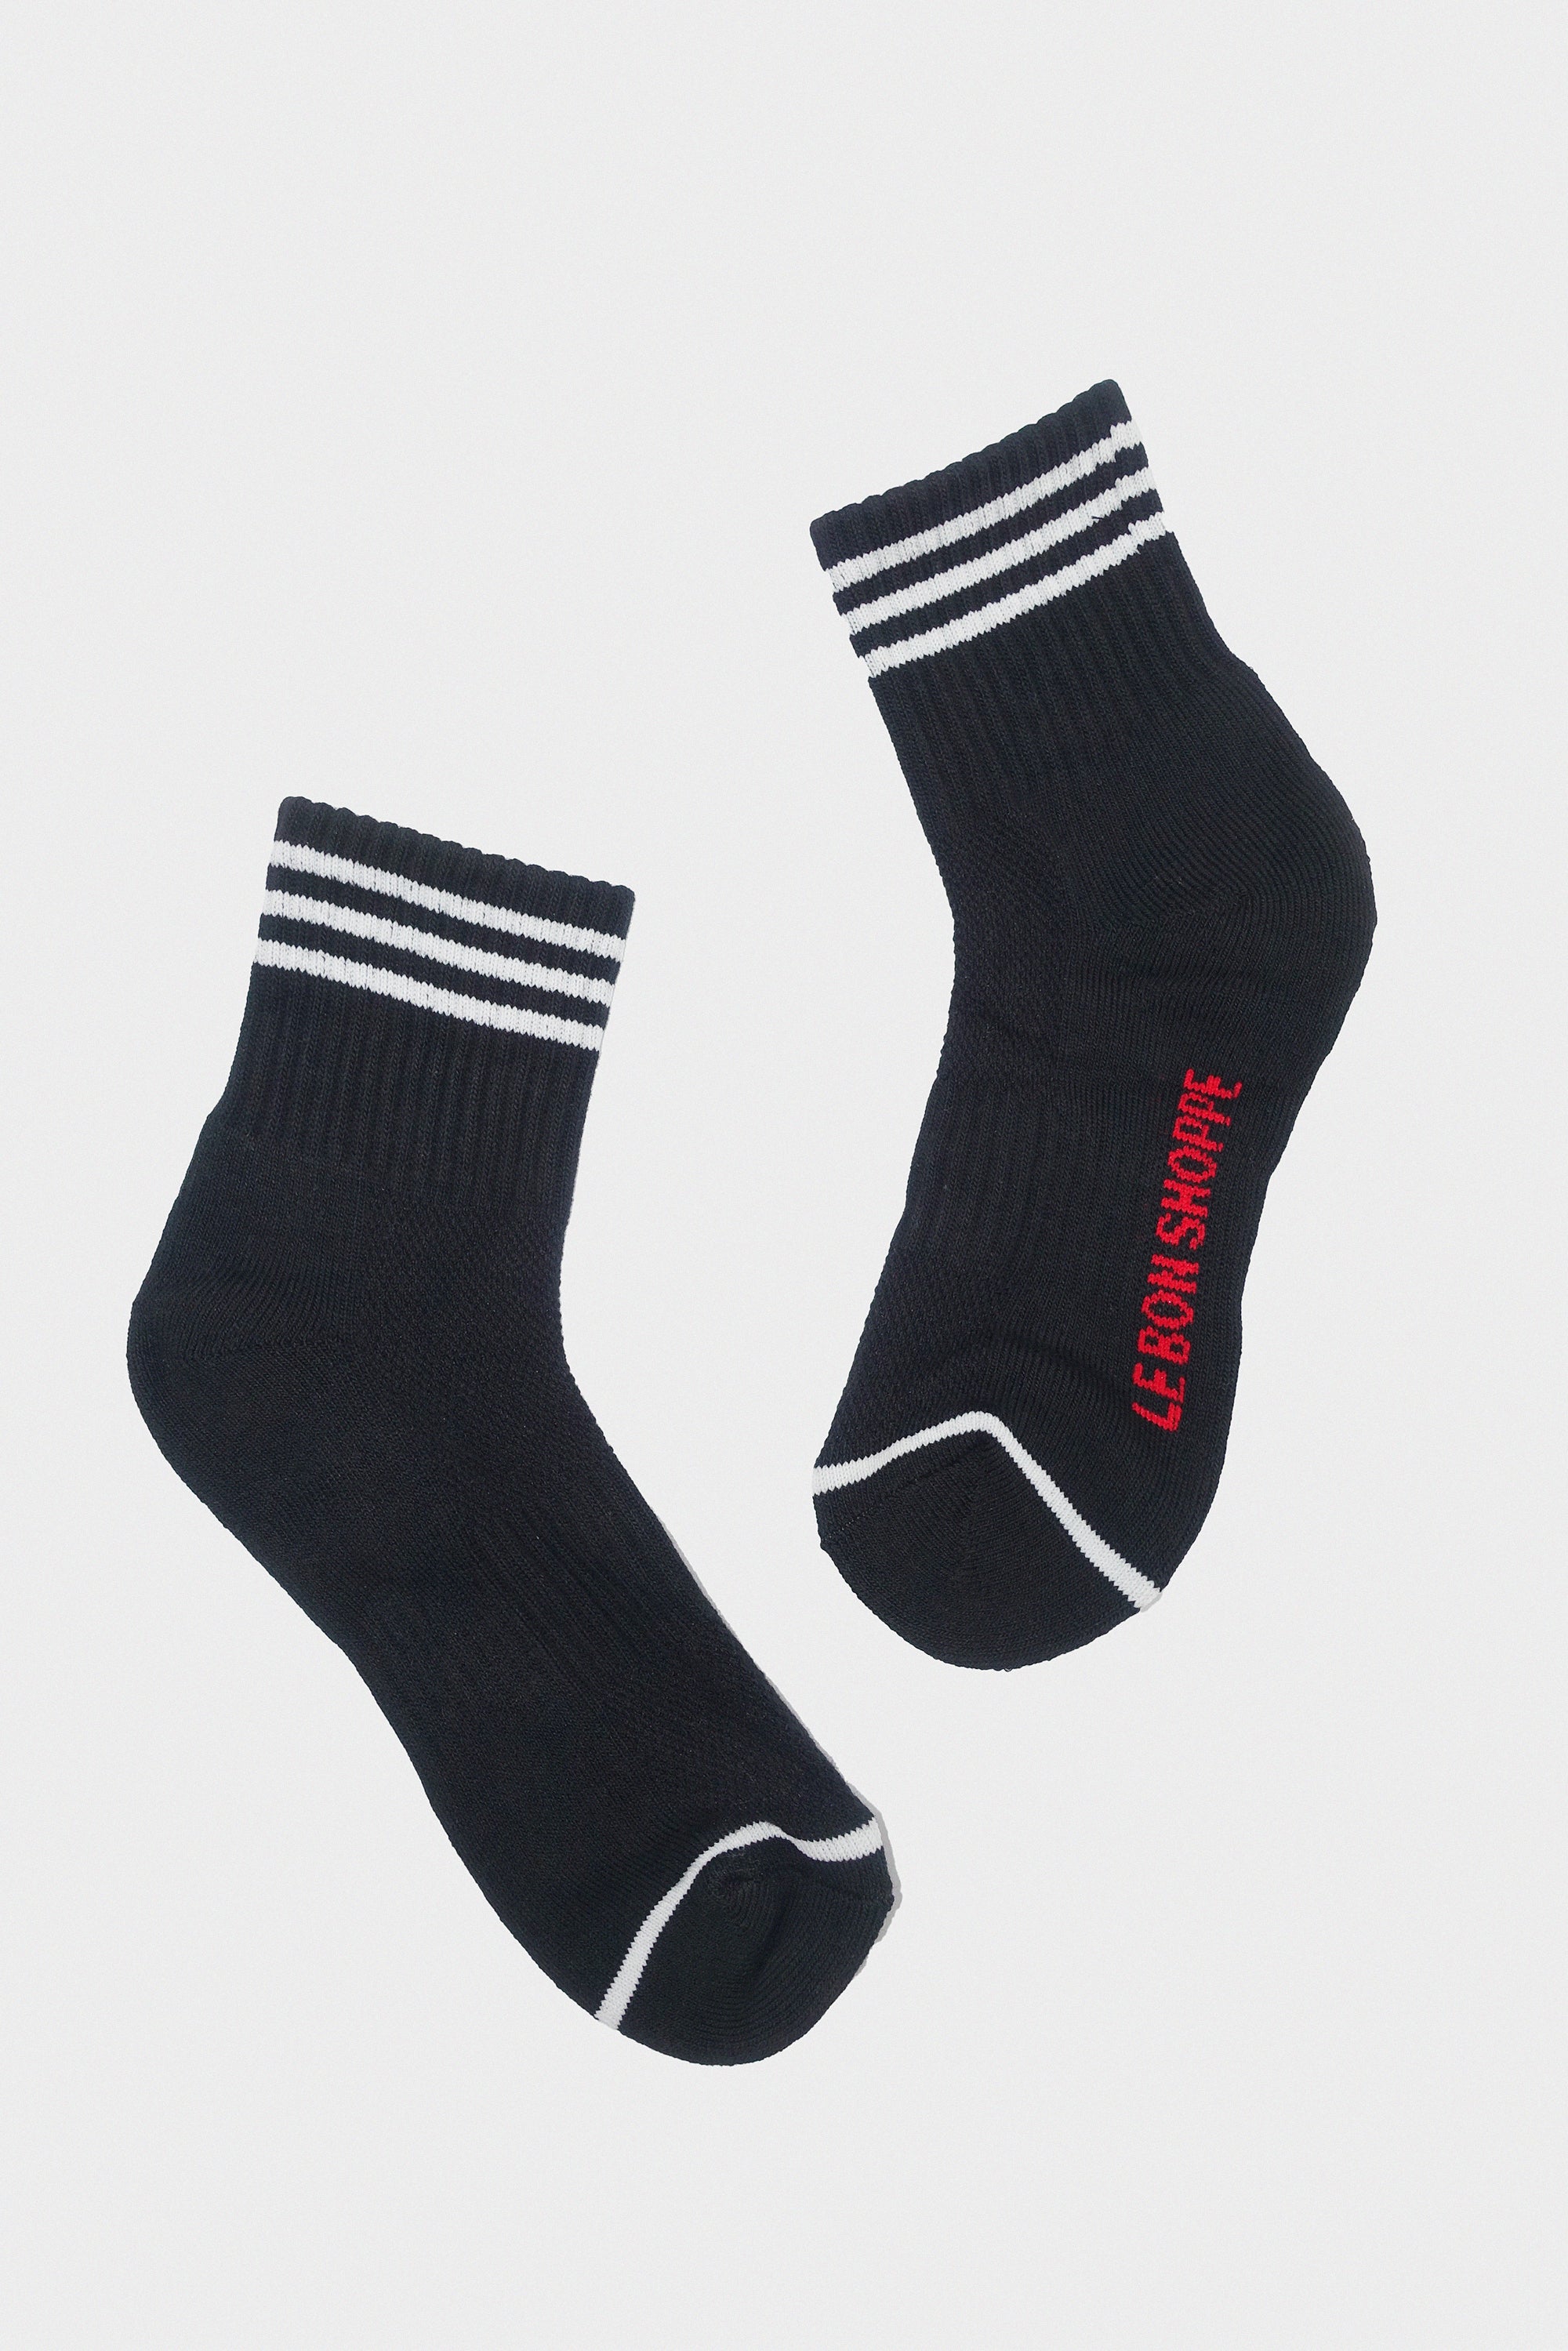 Girlfriend Socks in Black by Le Bon Shoppe